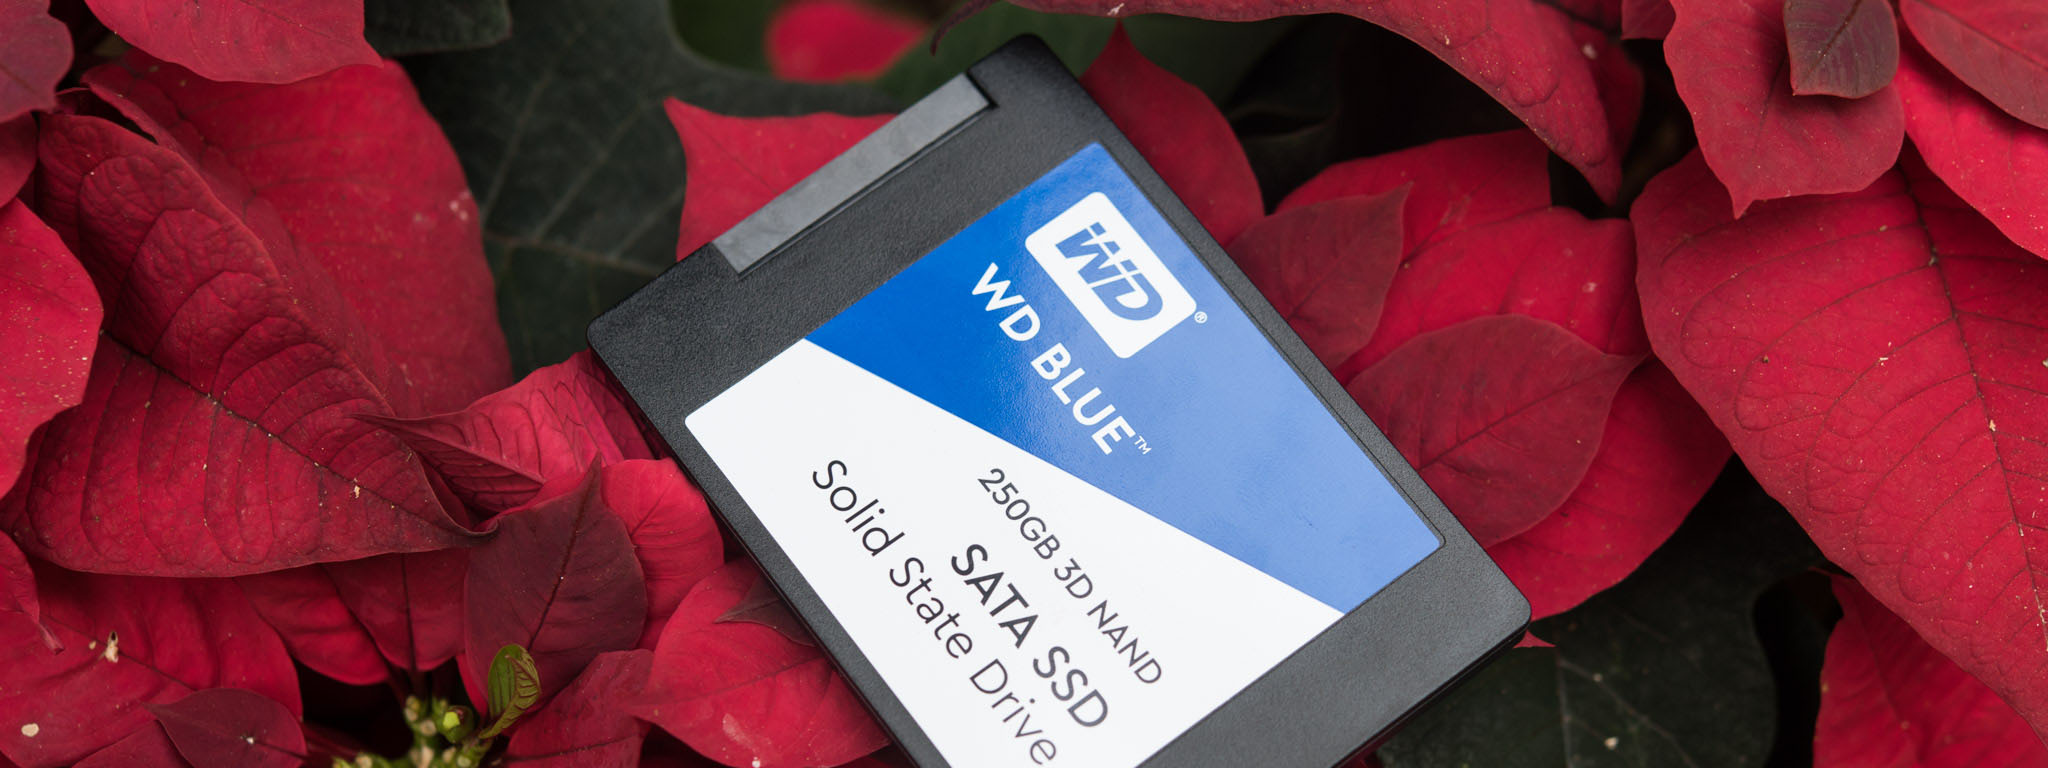 Đánh giá WD Blue SSD dùng 3D NAND mới, so sánh với phiên bản 2D NAND, đua tốc độ với RAID 0